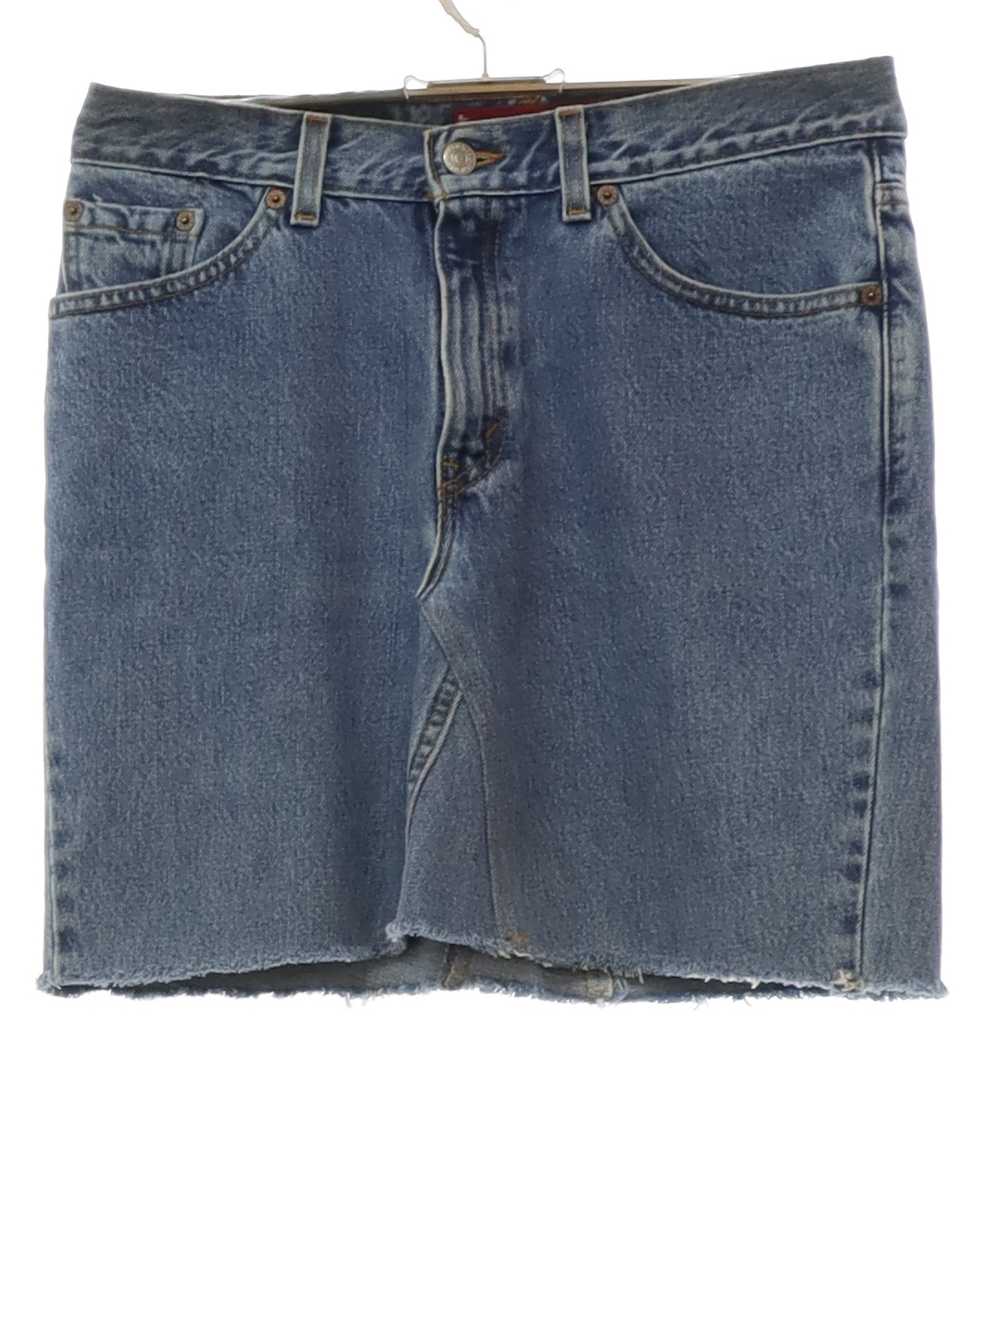 1990's Levis 517 Levis 517 Denim Jeans Mini Skirt - image 3